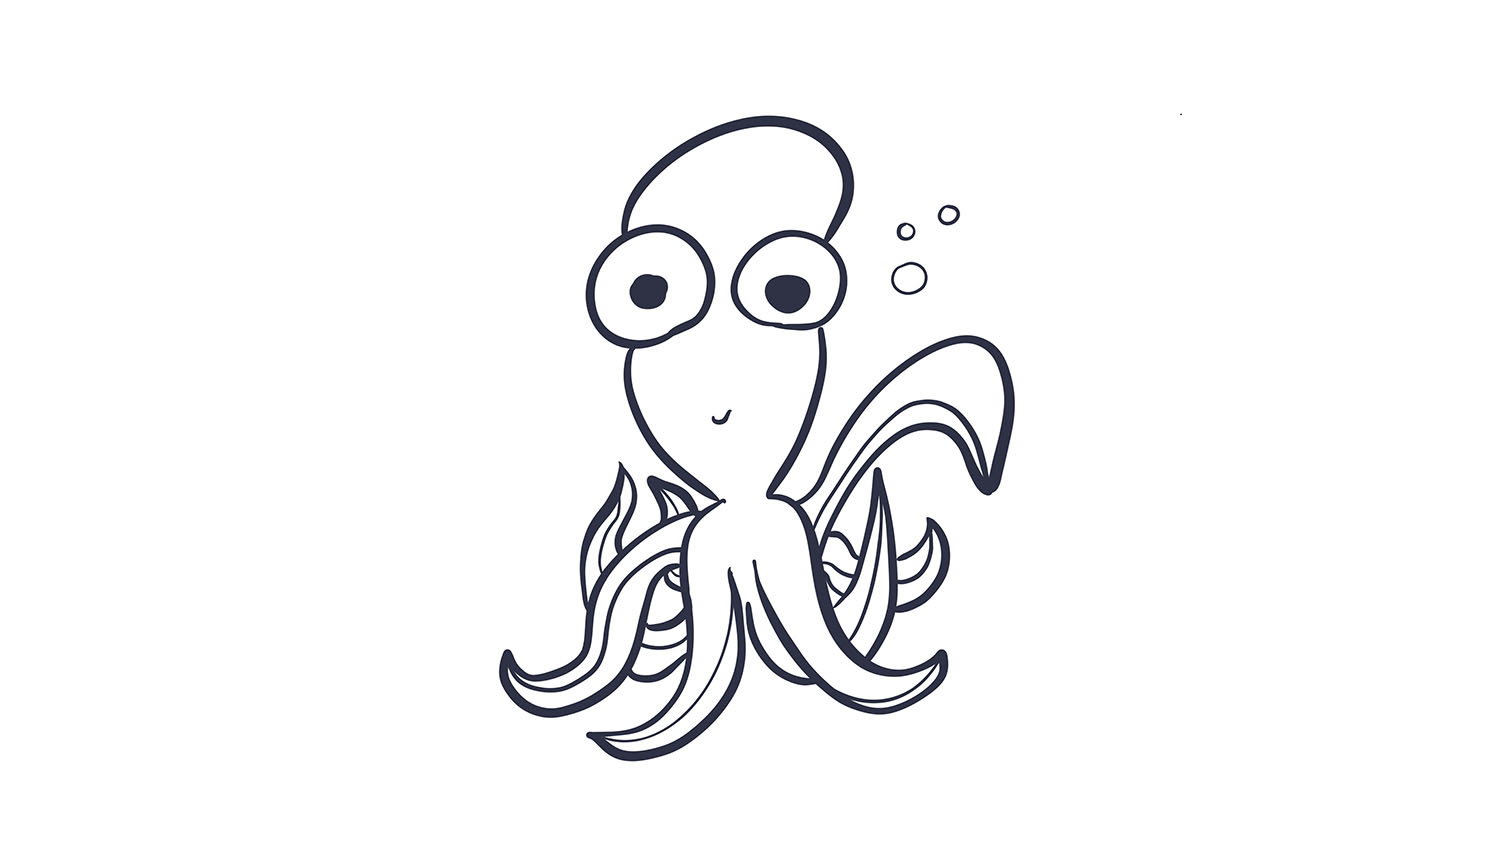 7. Pulpo / Octopus. 103dibujos